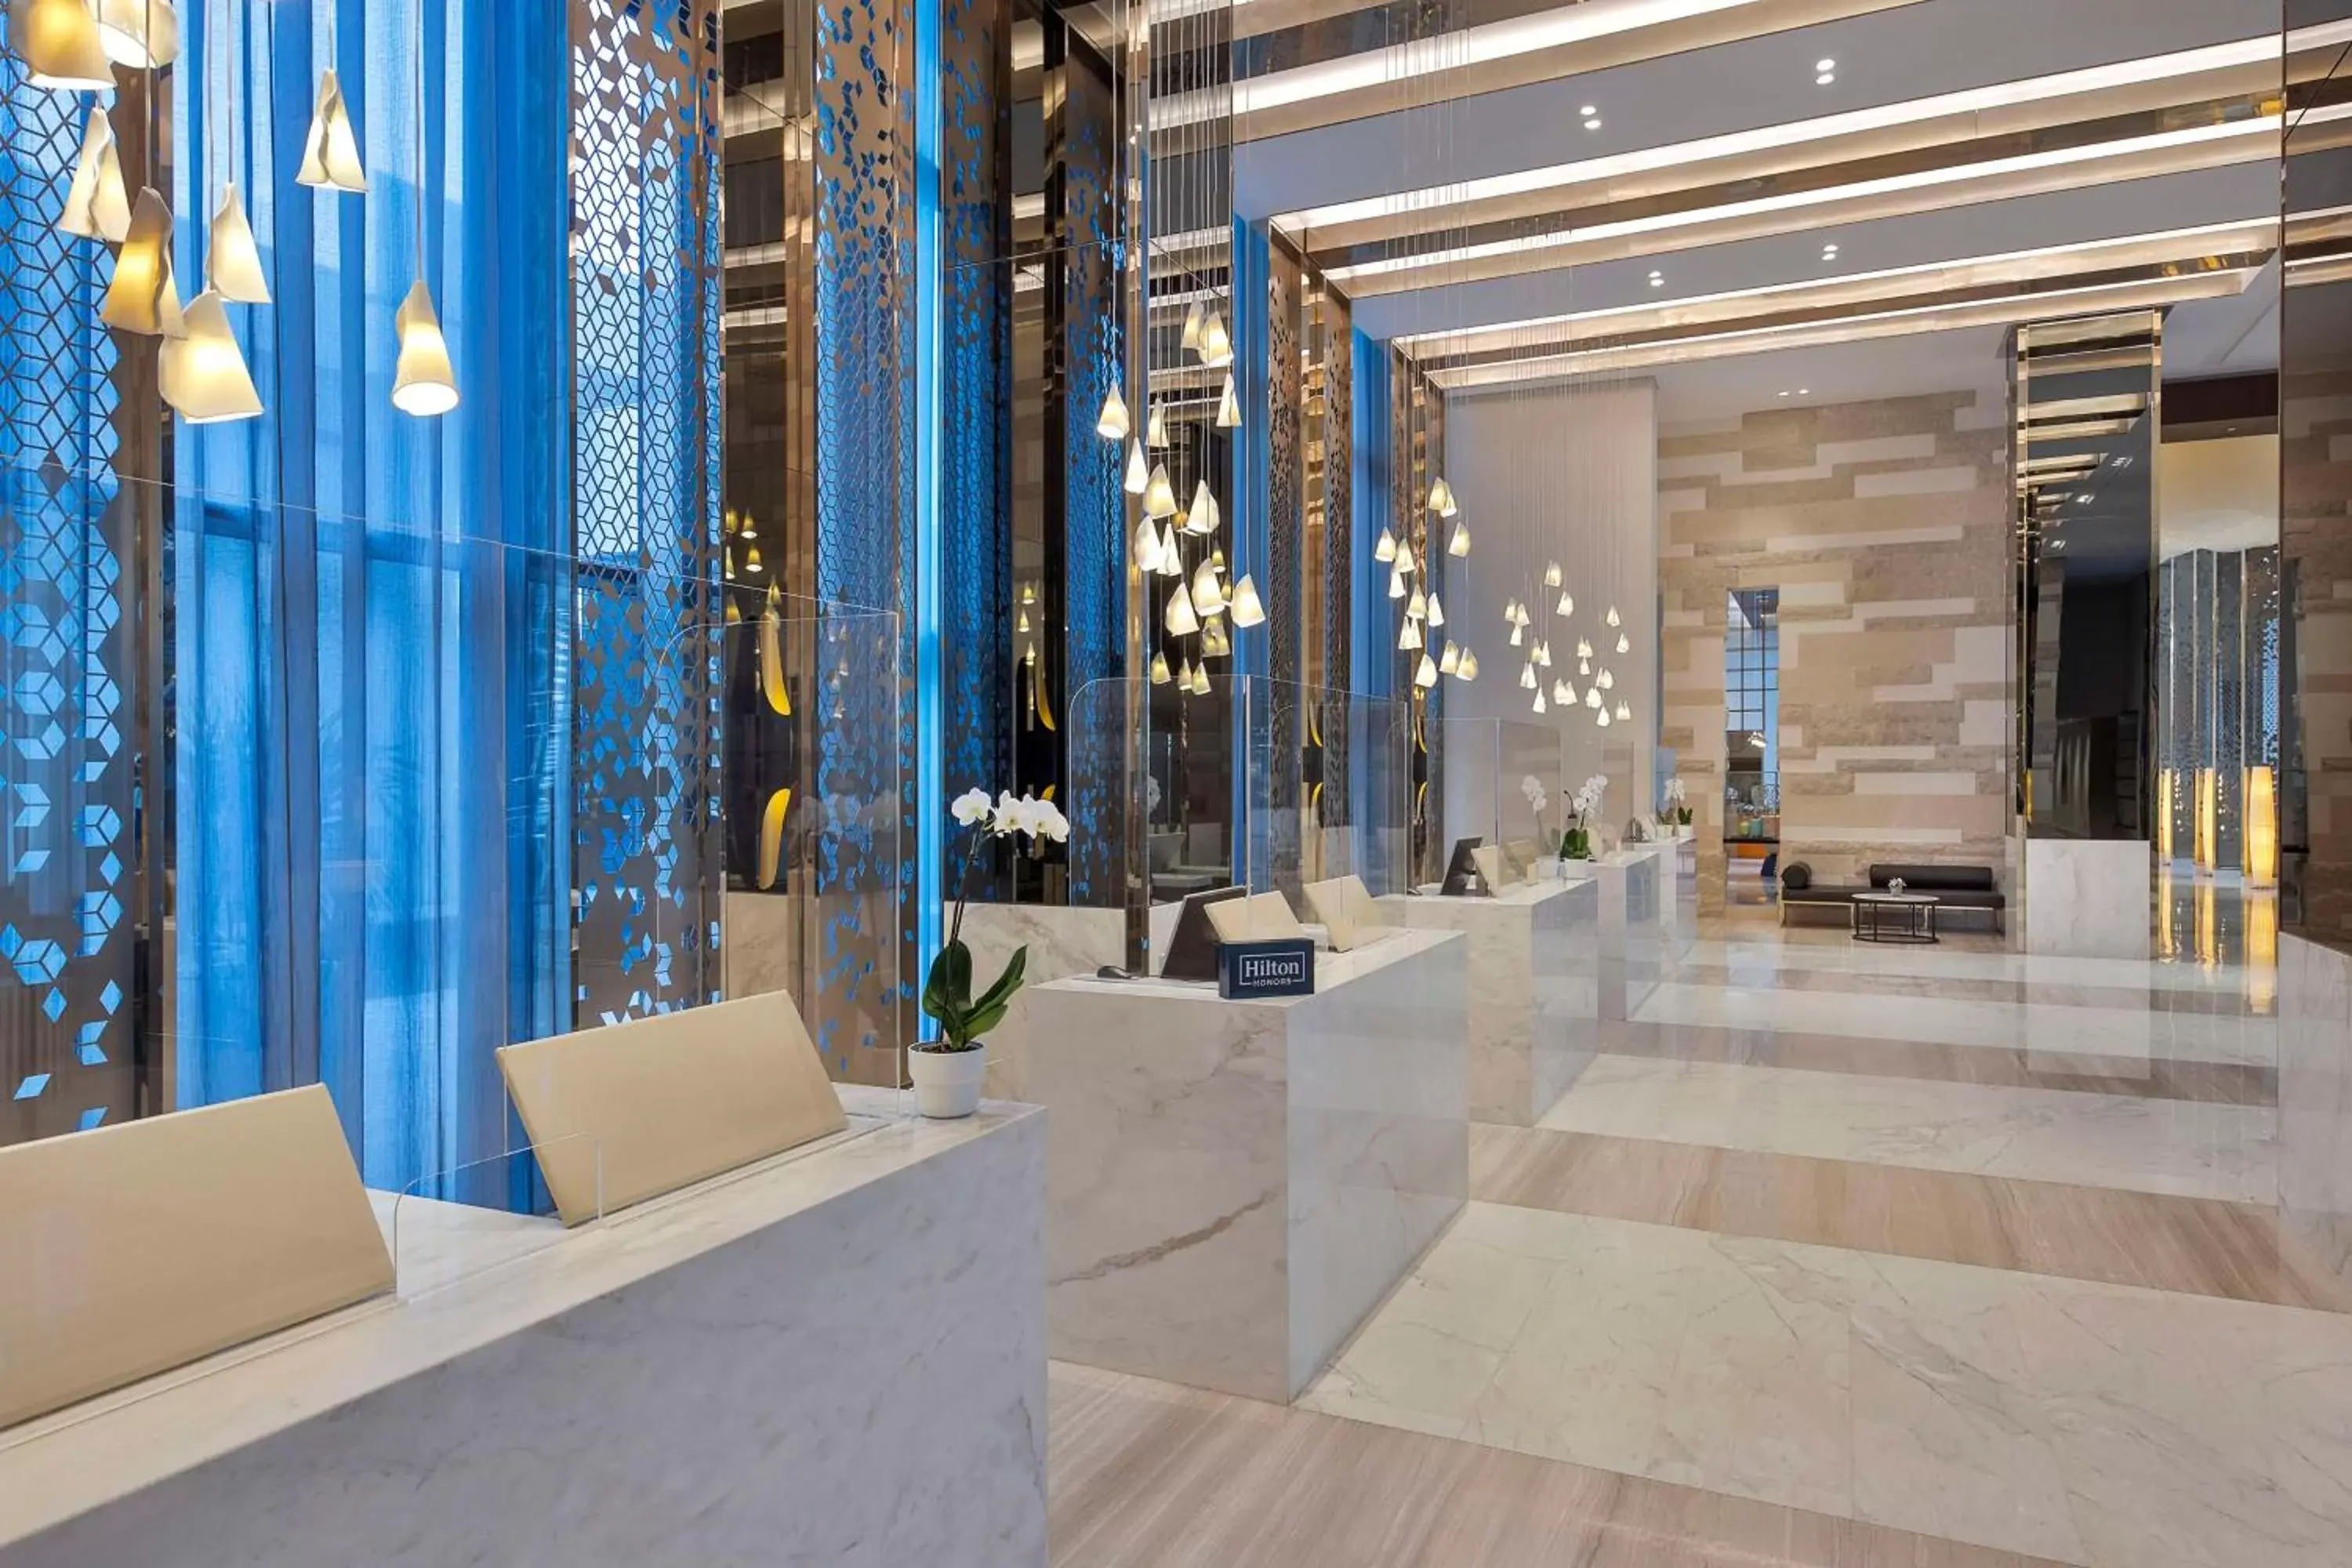 Lobby or reception, Lobby/Reception in Hilton Abu Dhabi Yas Island